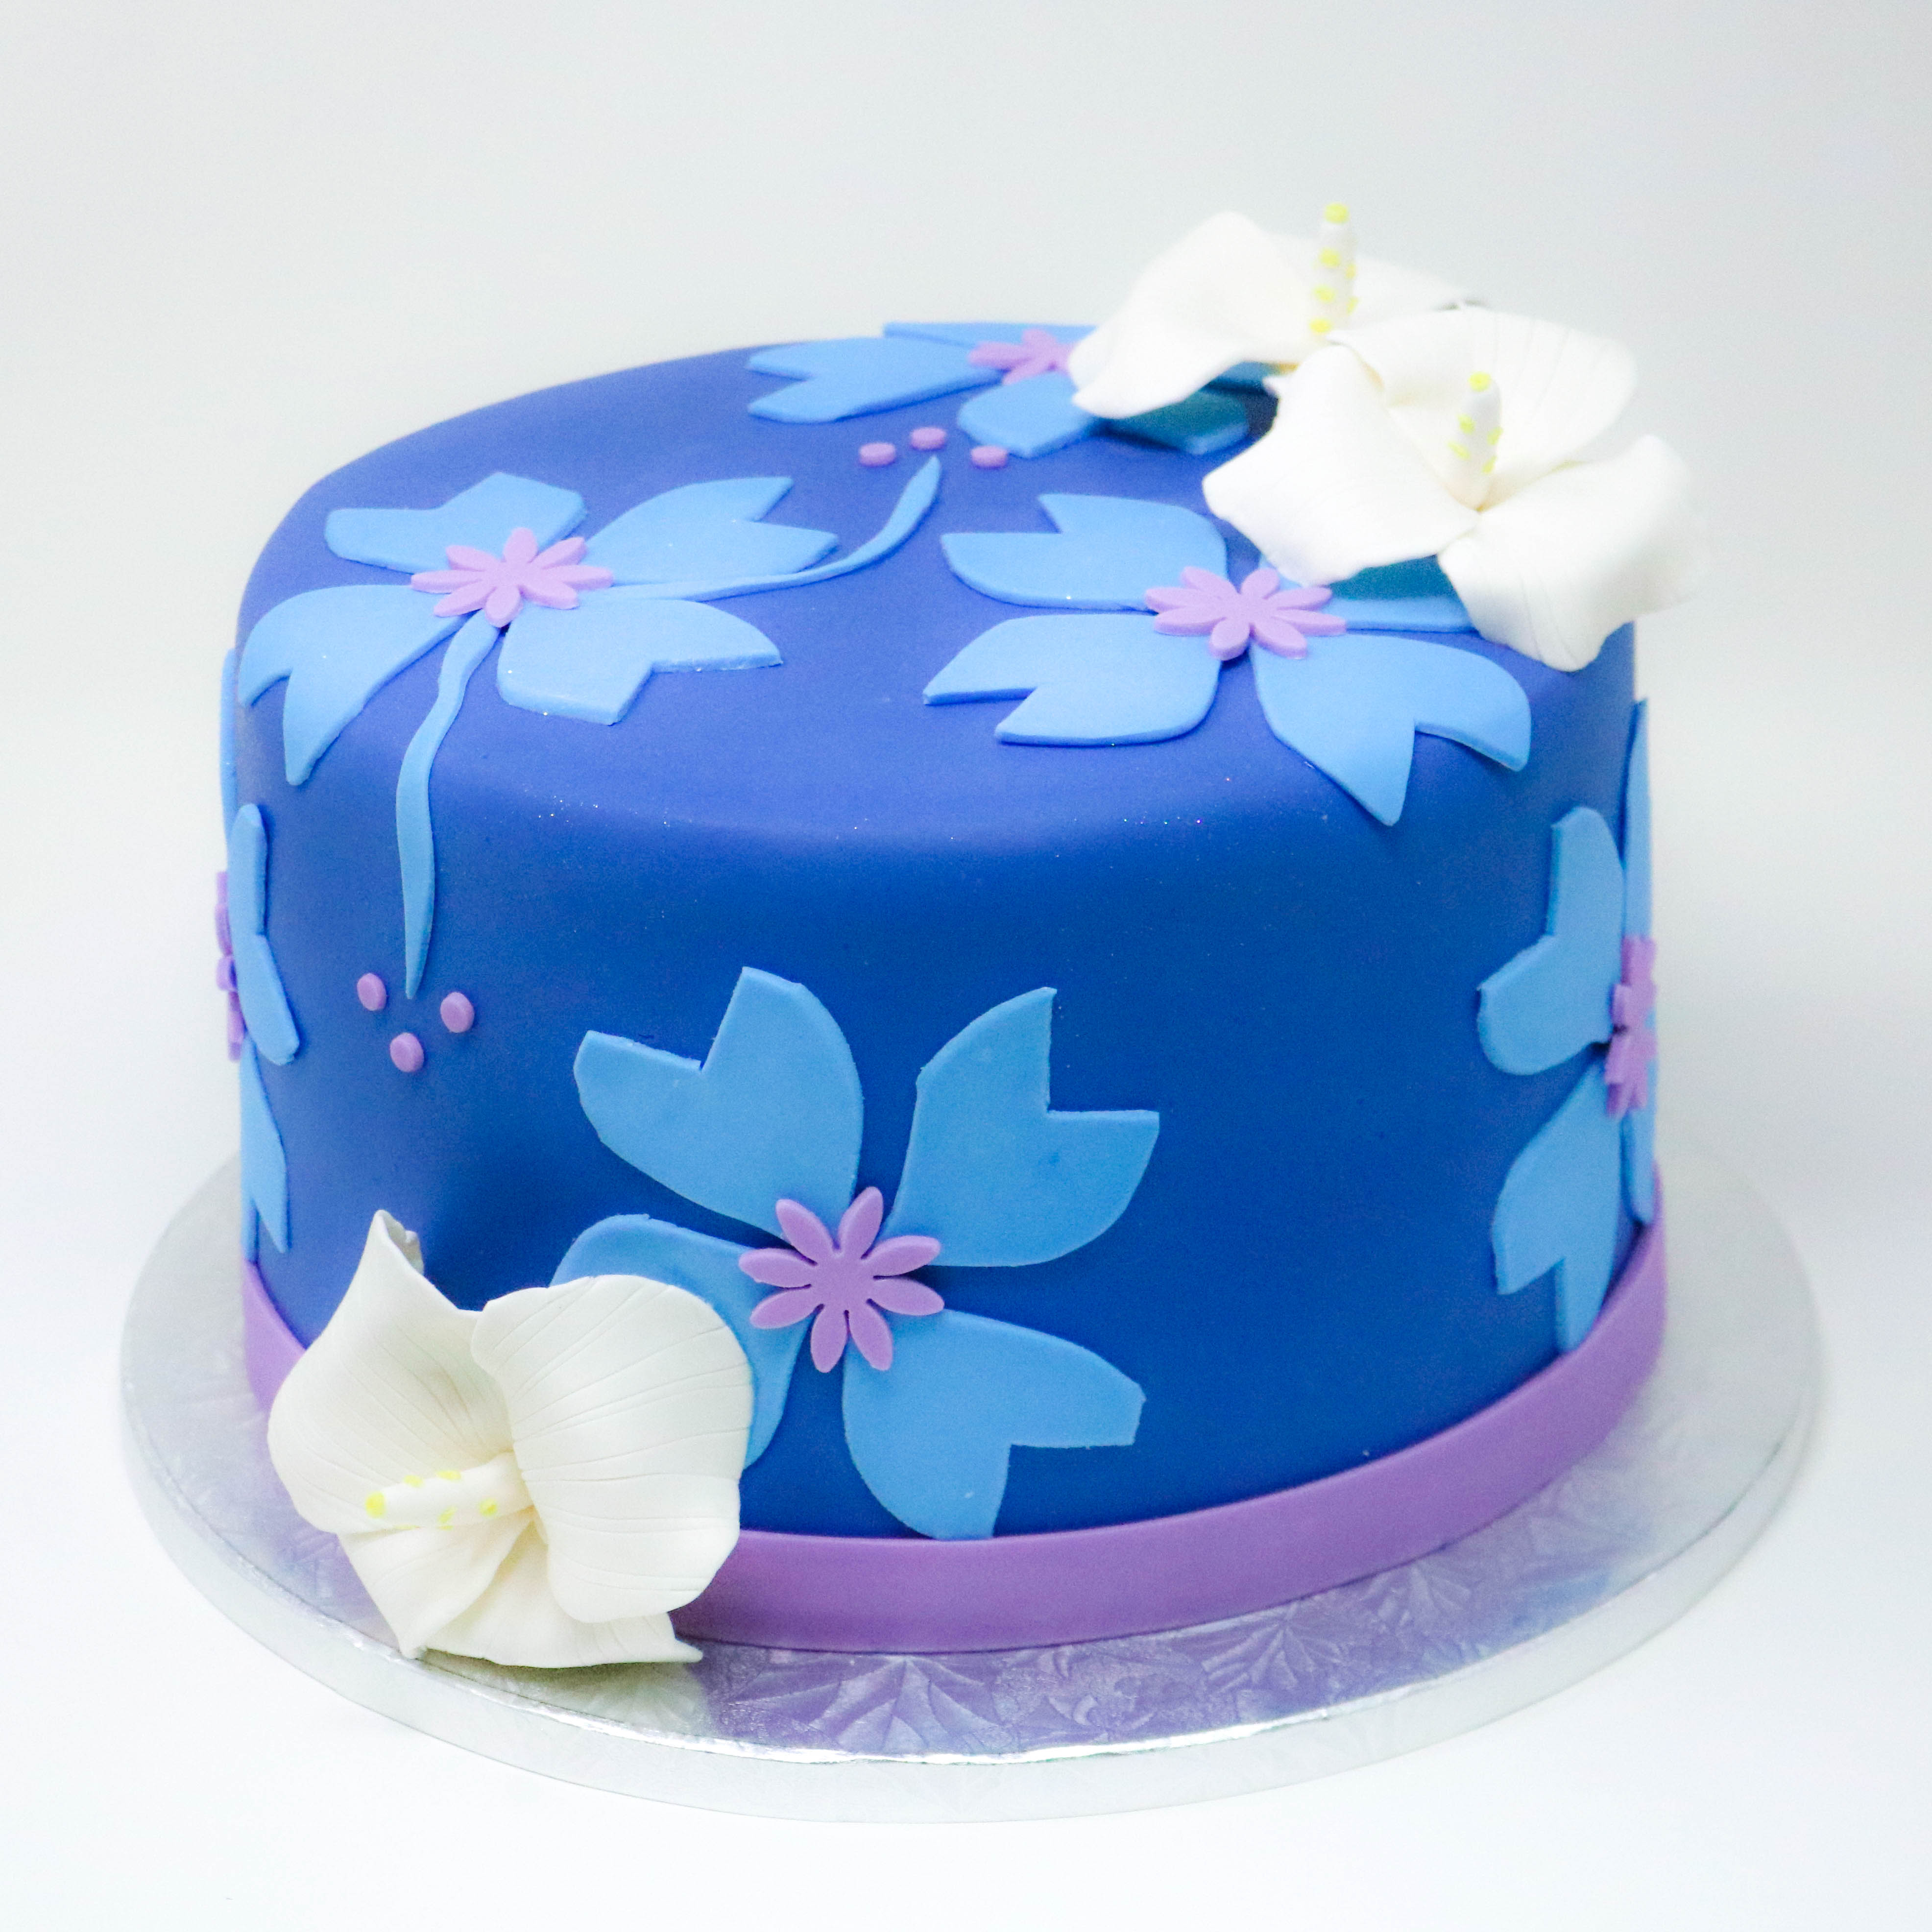 Lilo and Stitch celebration cake